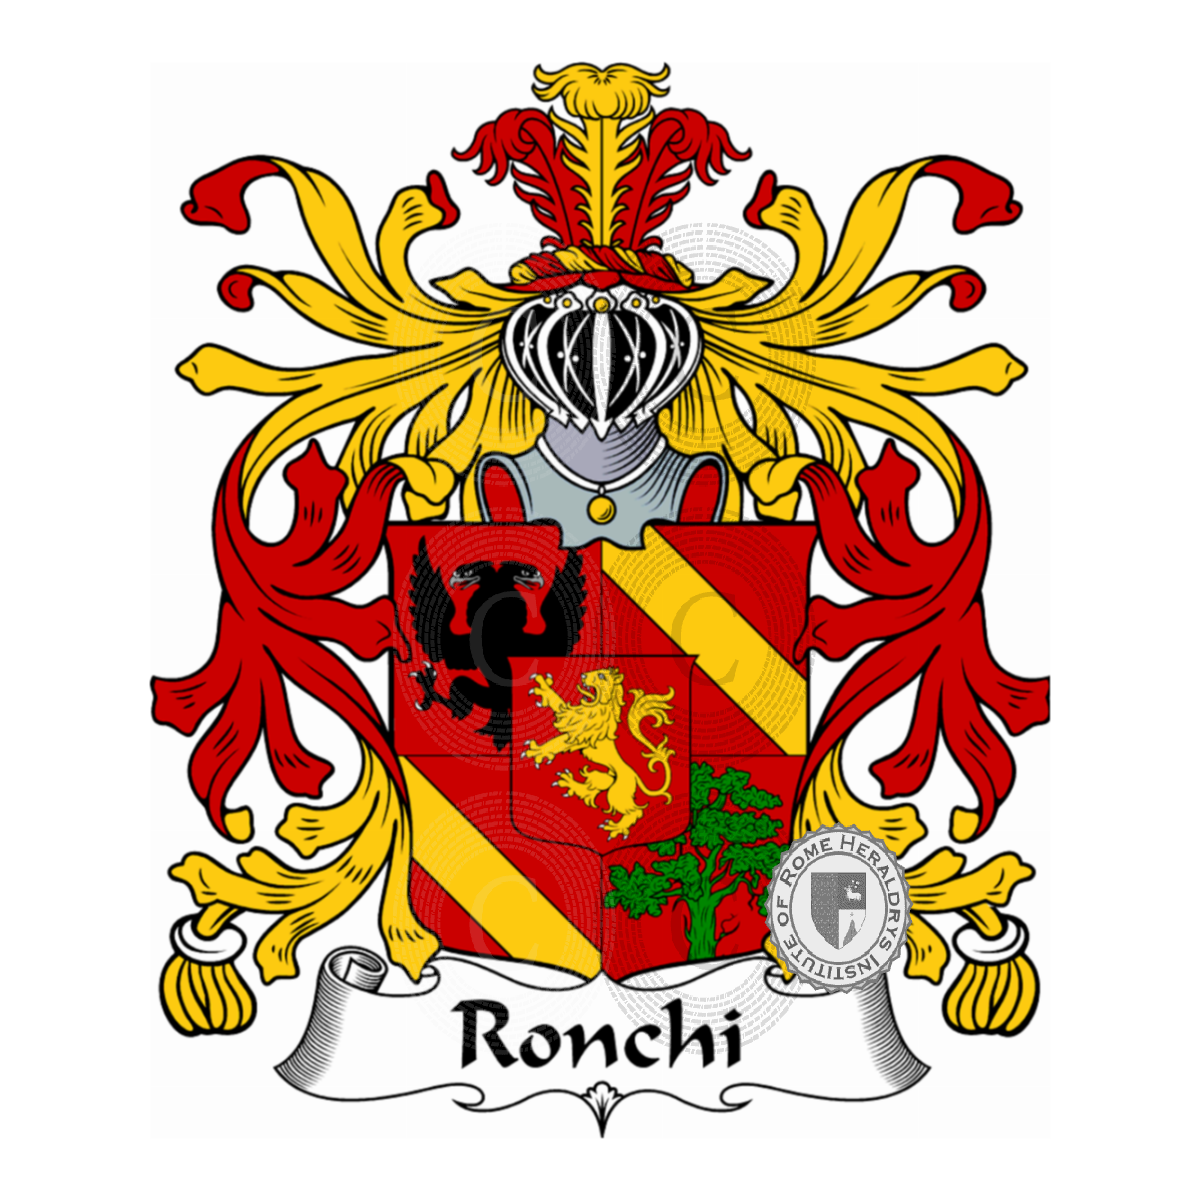 Stemma della famigliaRonchi, Ronch (da),Ronchi Braccioli,Ronco (da),Ronghi